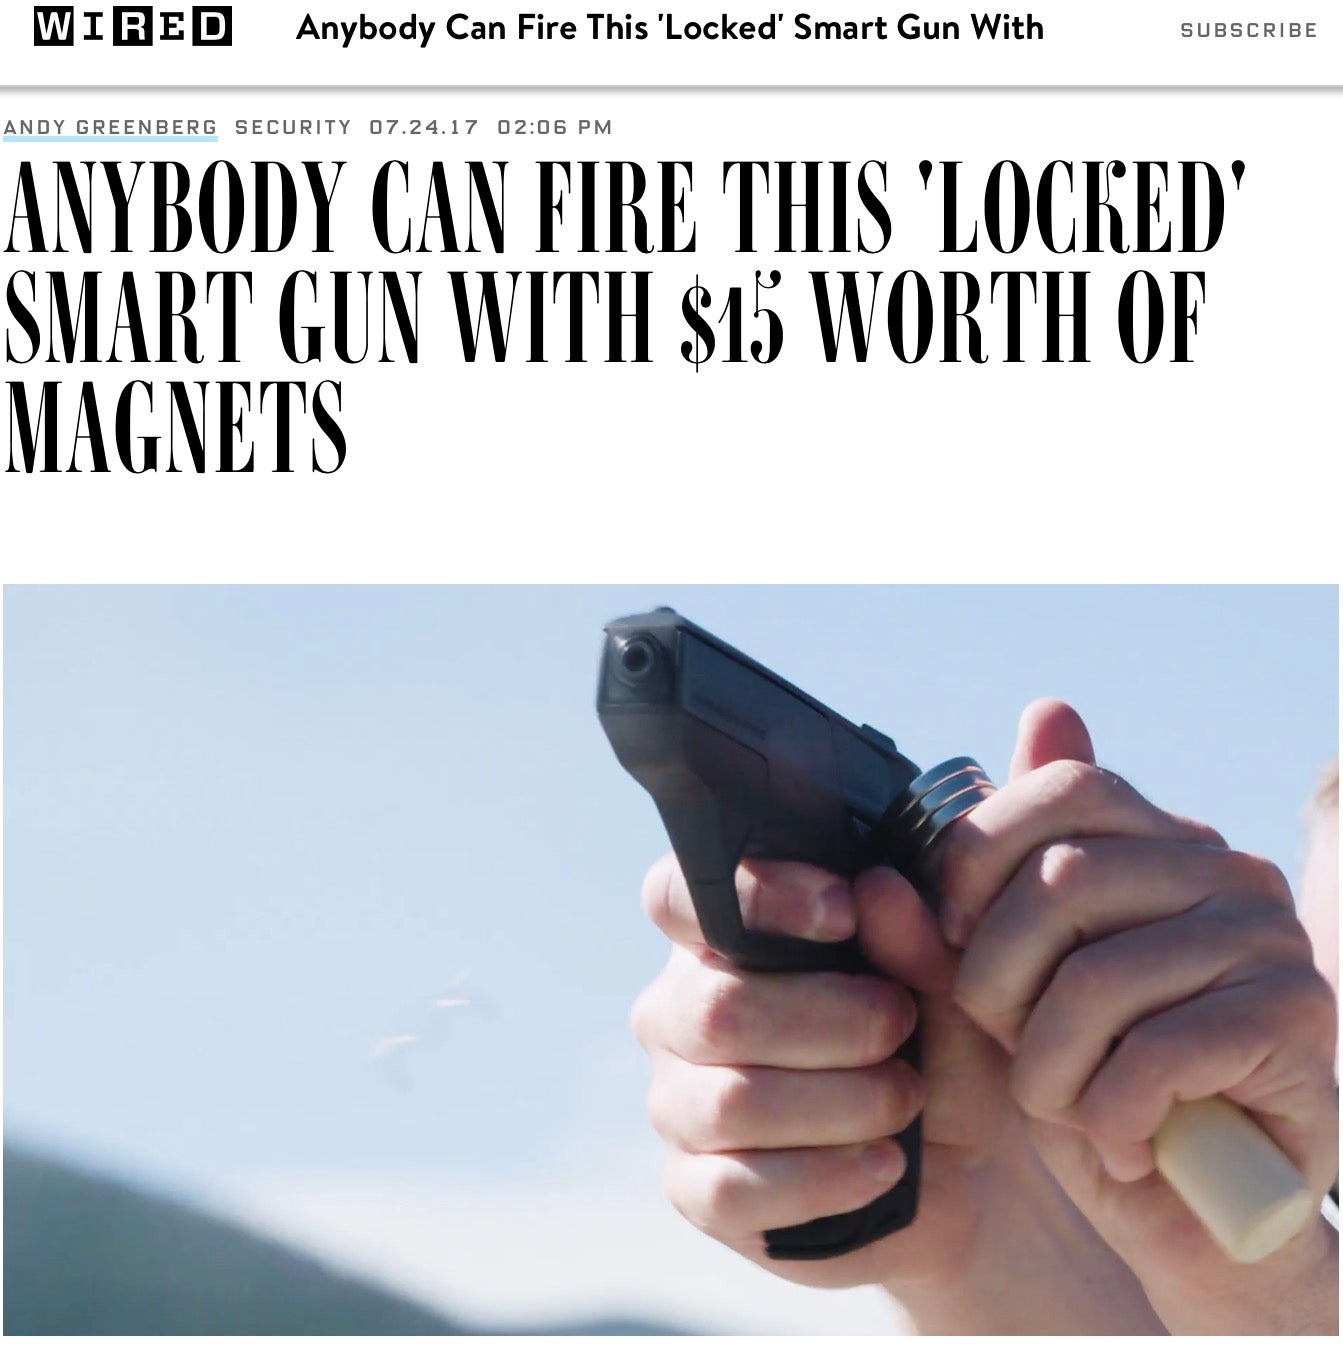 Smart gun